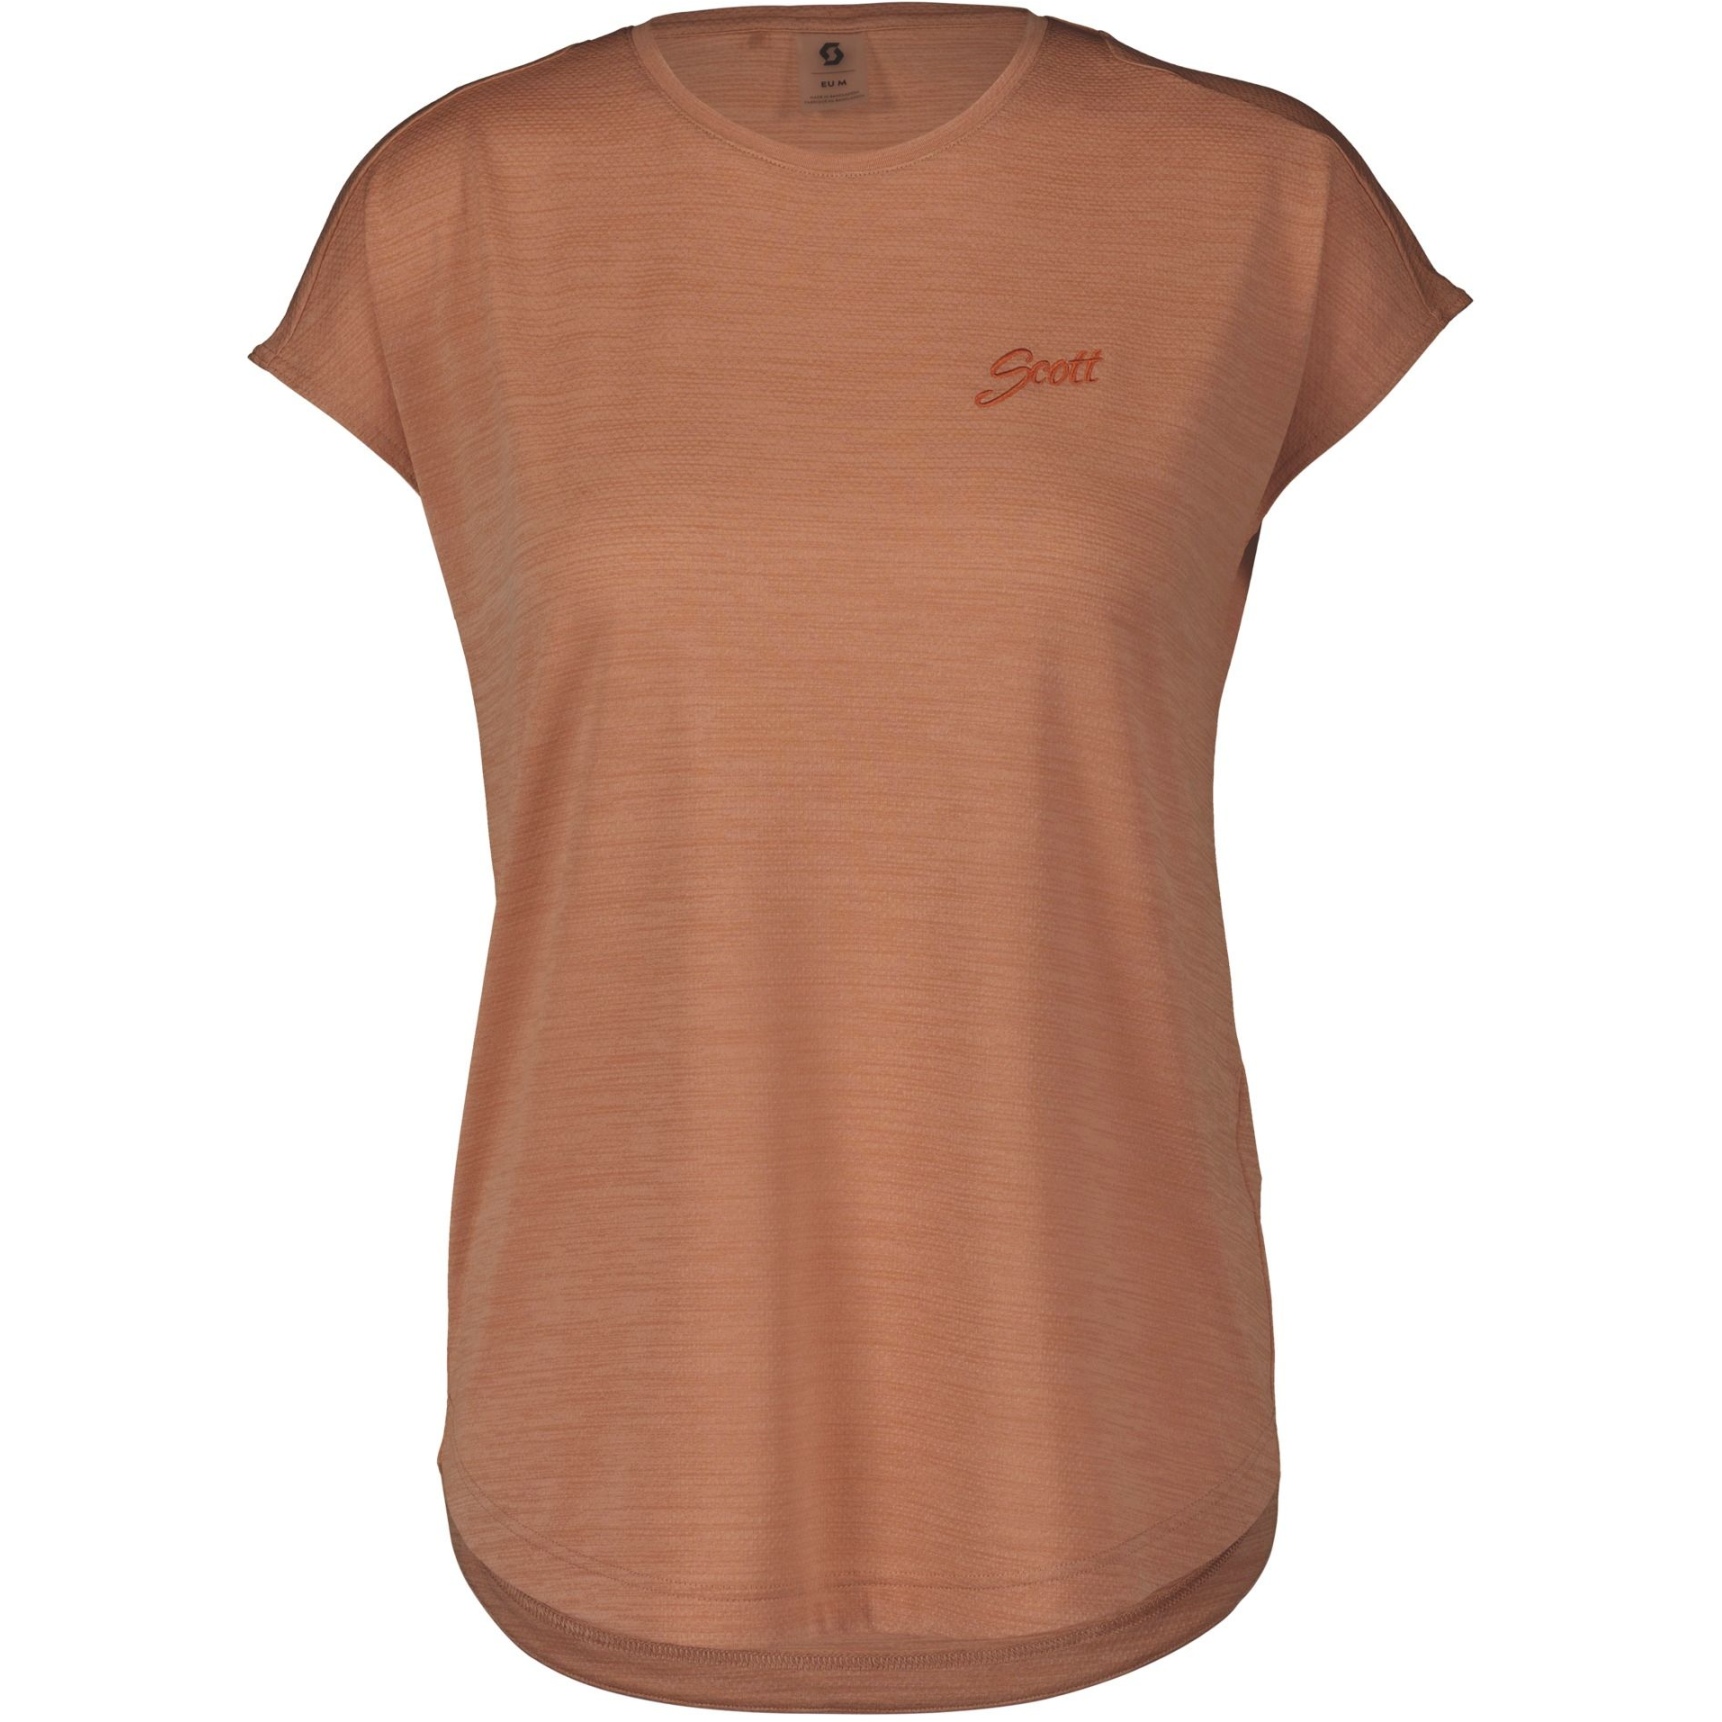 Produktbild von SCOTT Defined Kurzarmshirt Damen - rose beige